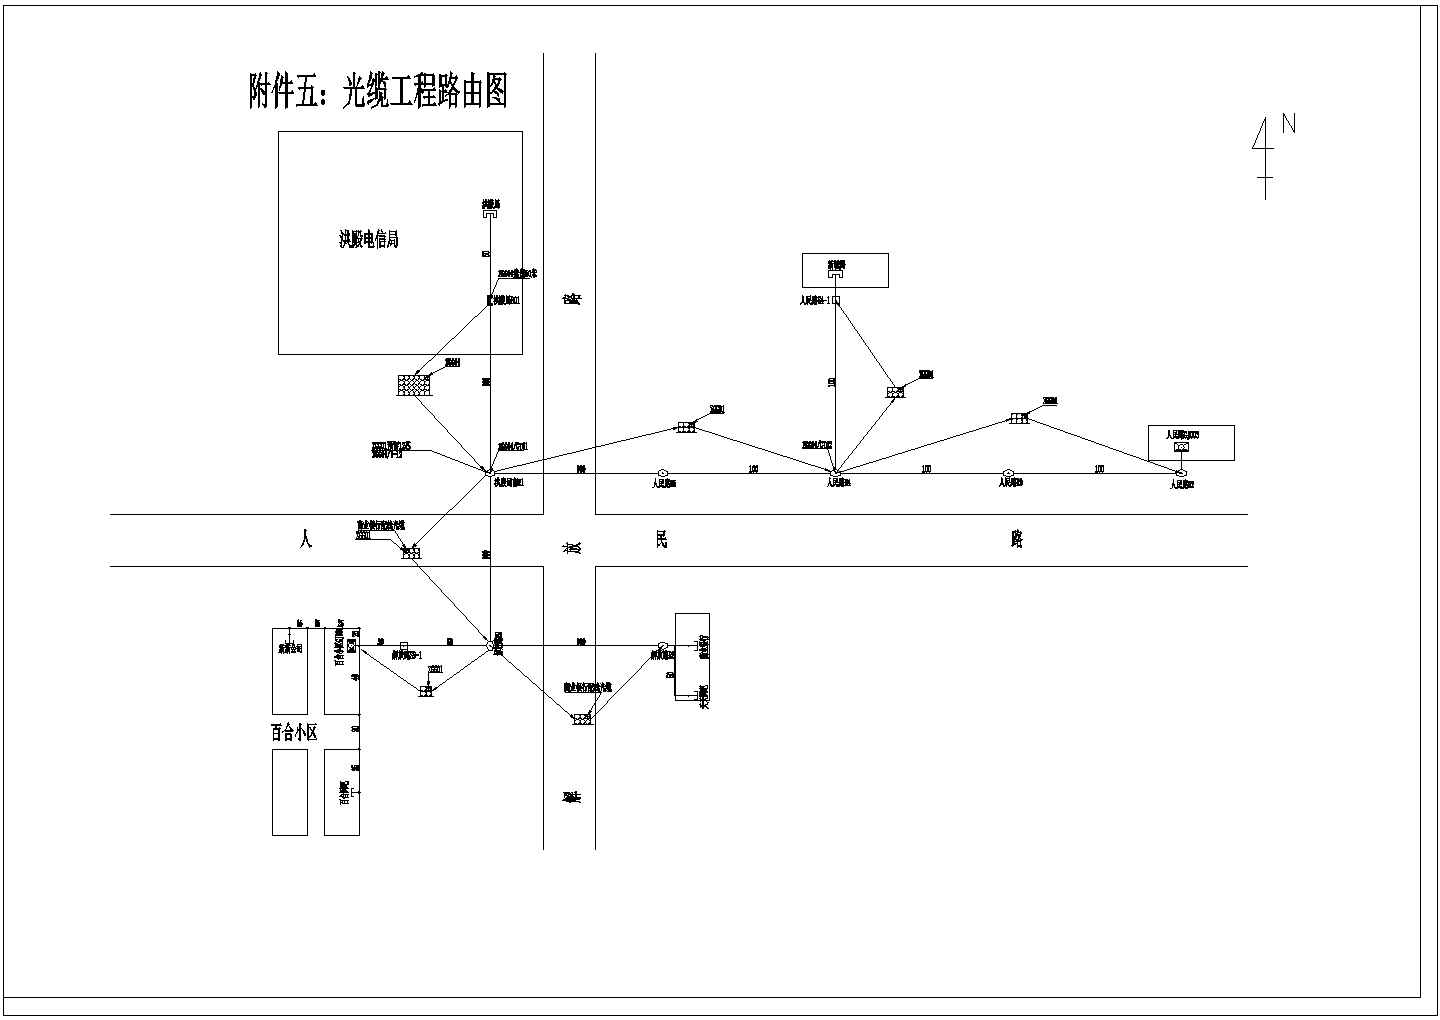 【江州市】某电气施工单位电信管道设计图纸